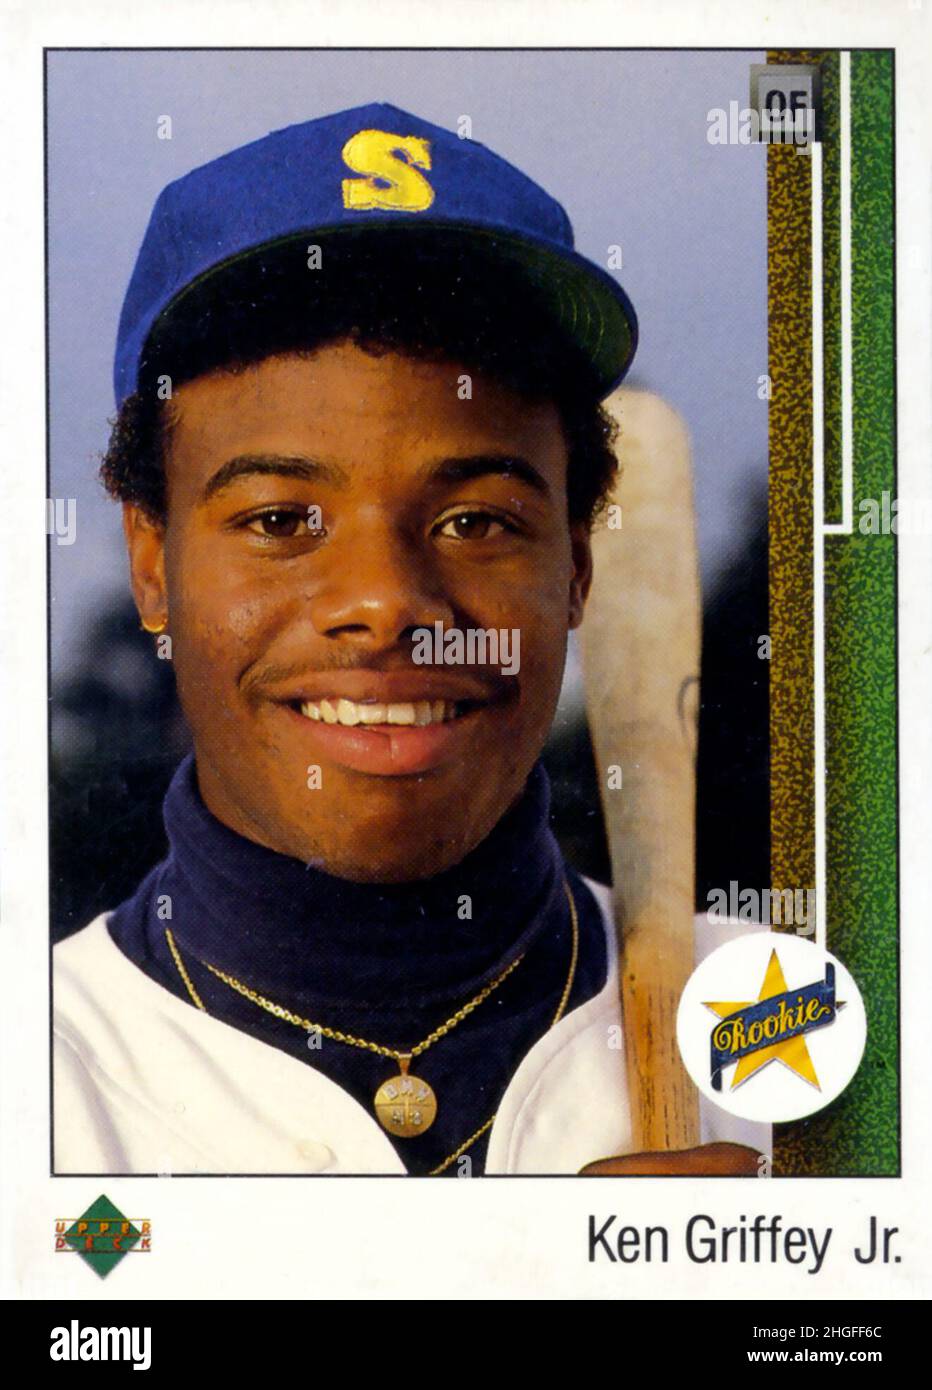 1993 Upper Deck Ken Griffey Jr. baseball card Stock Photo